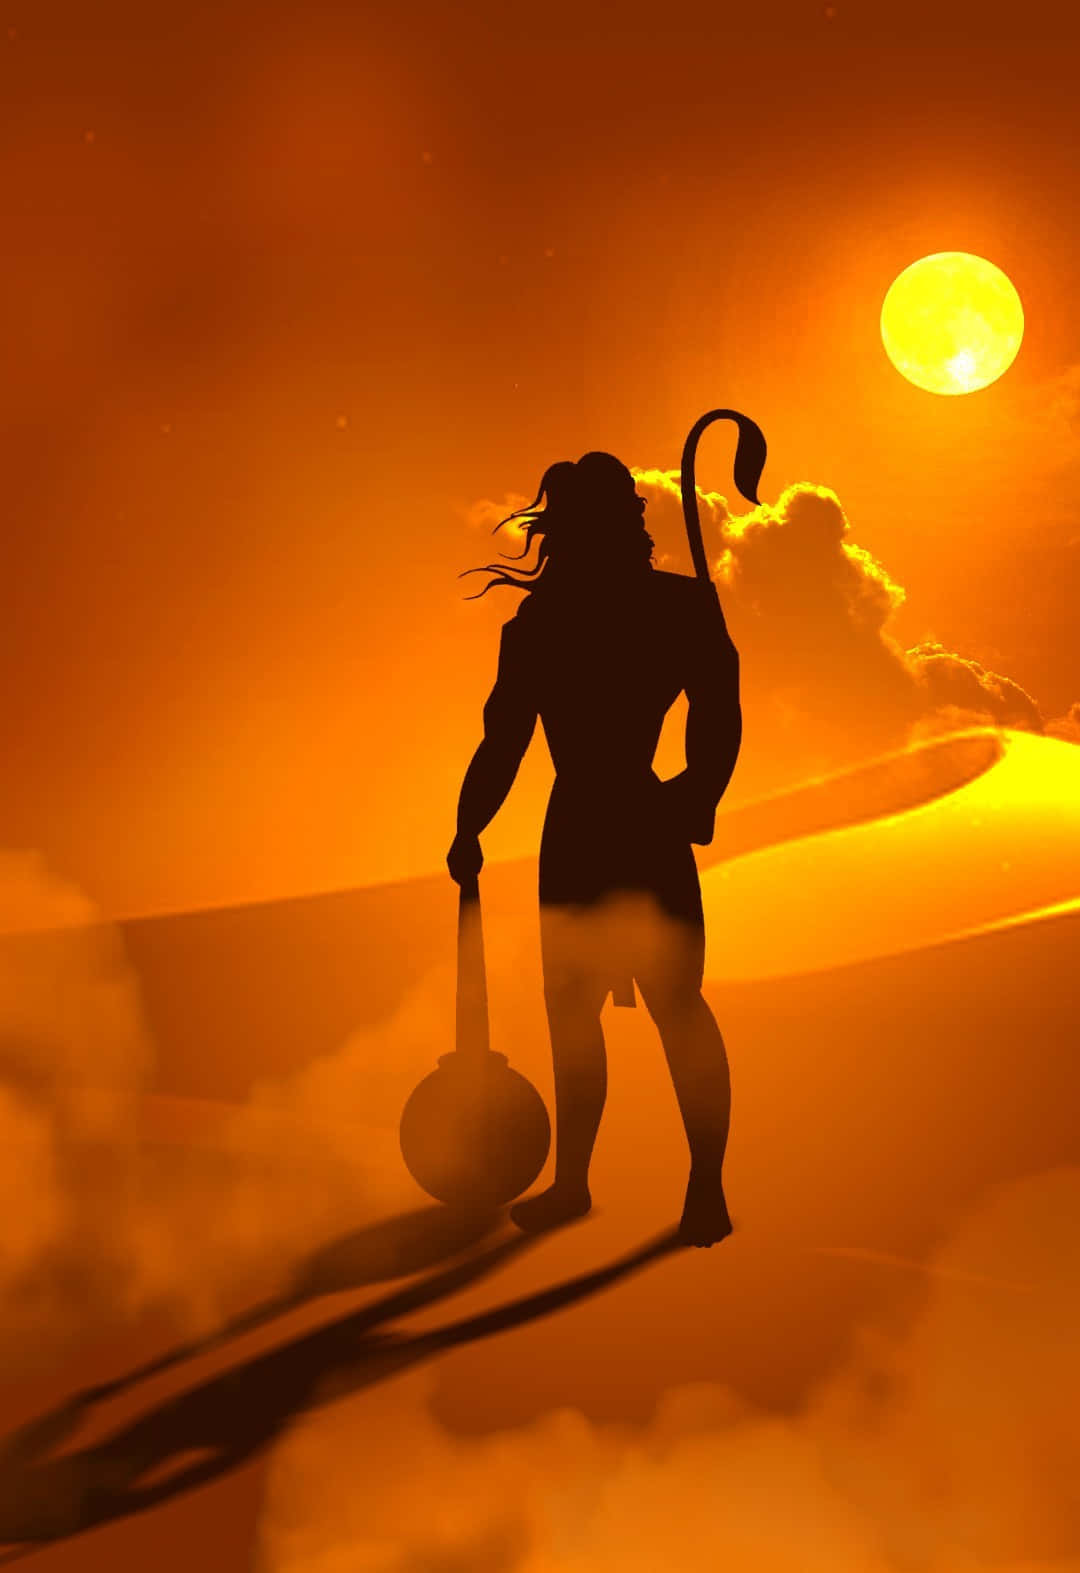 Imagende Hanuman En El Desierto.